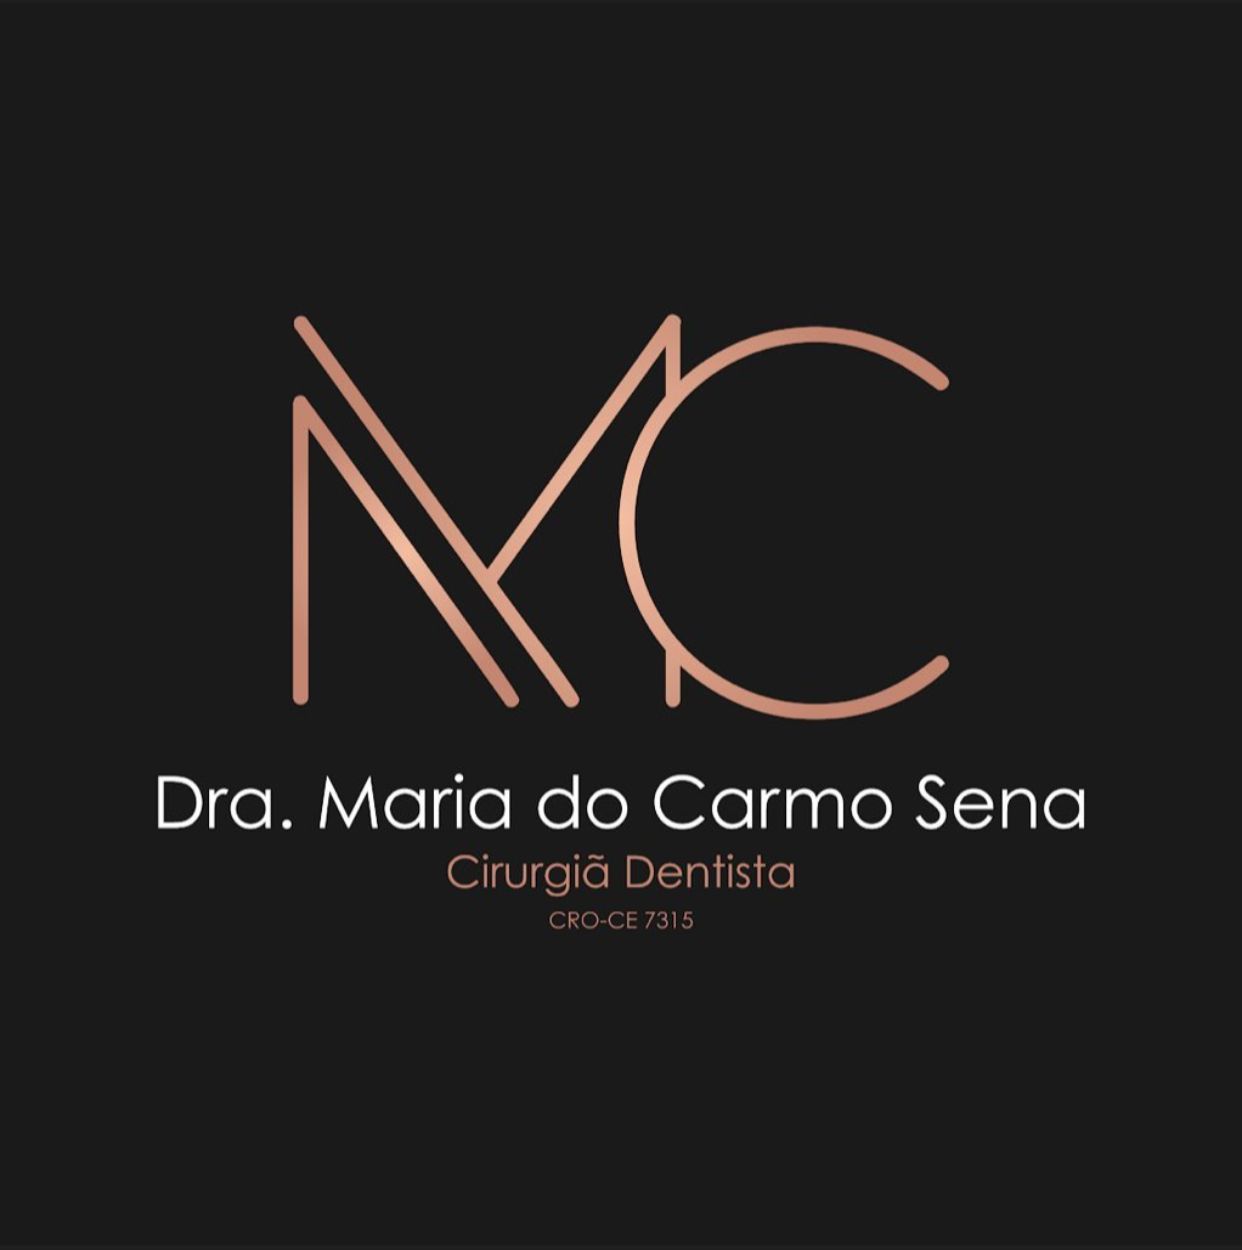 Dra. maria do Carmo